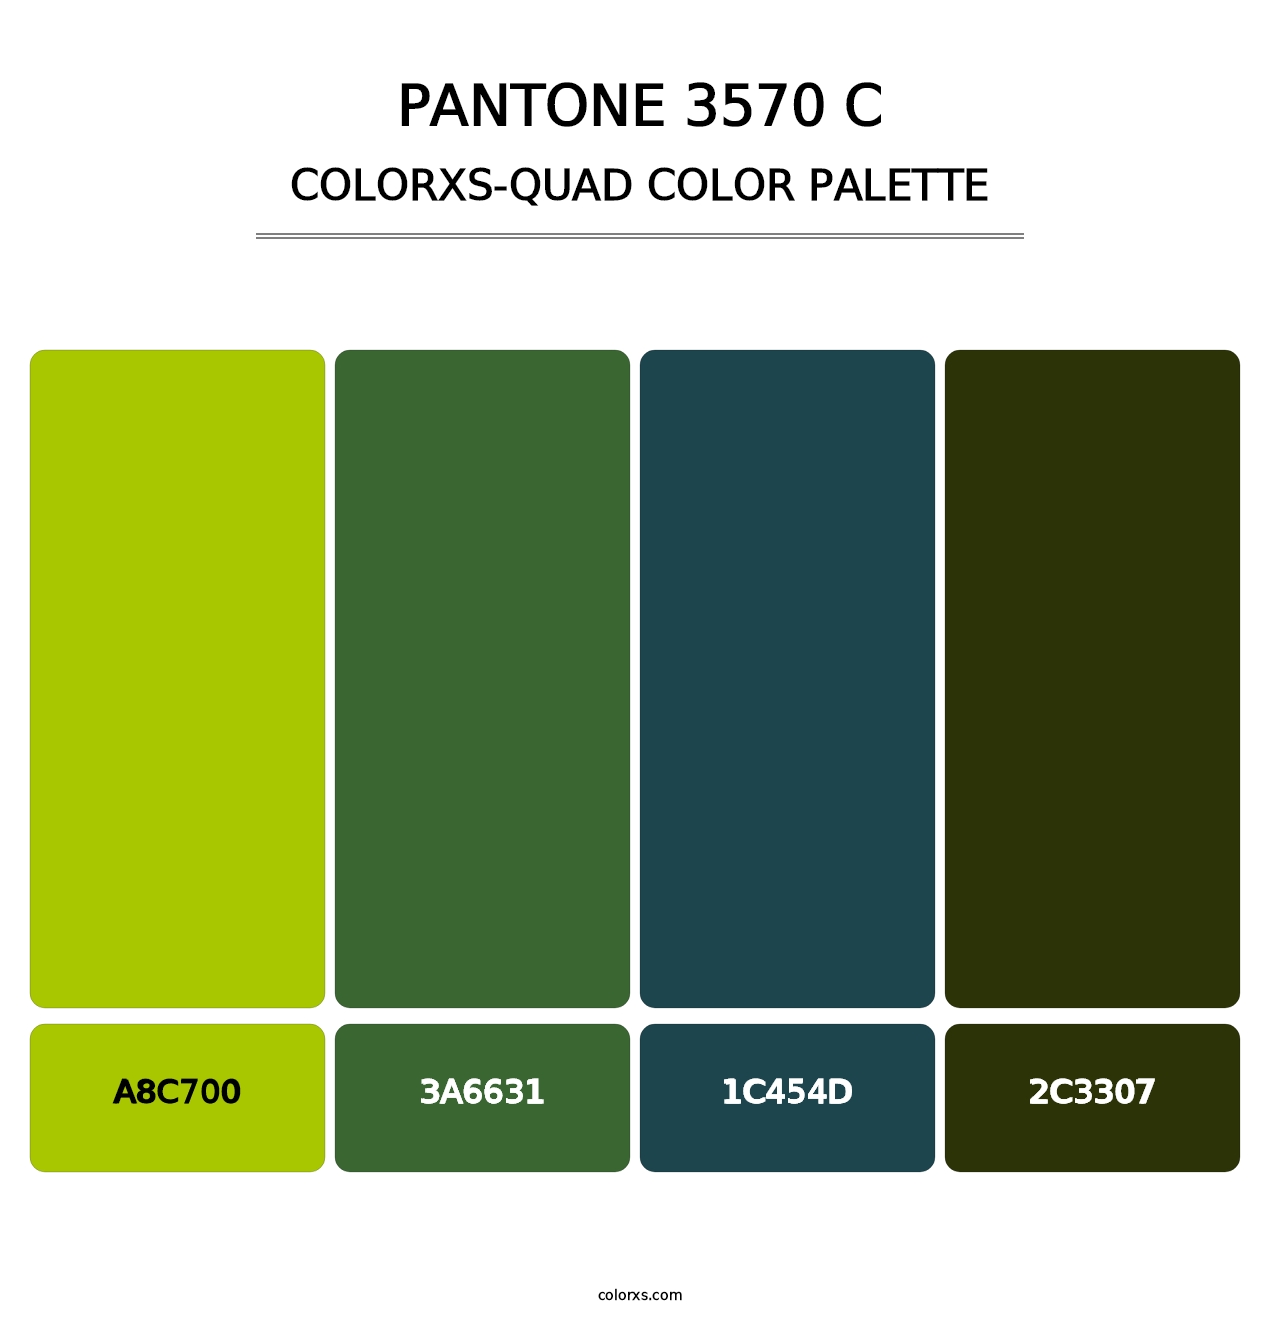 PANTONE 3570 C - Colorxs Quad Palette